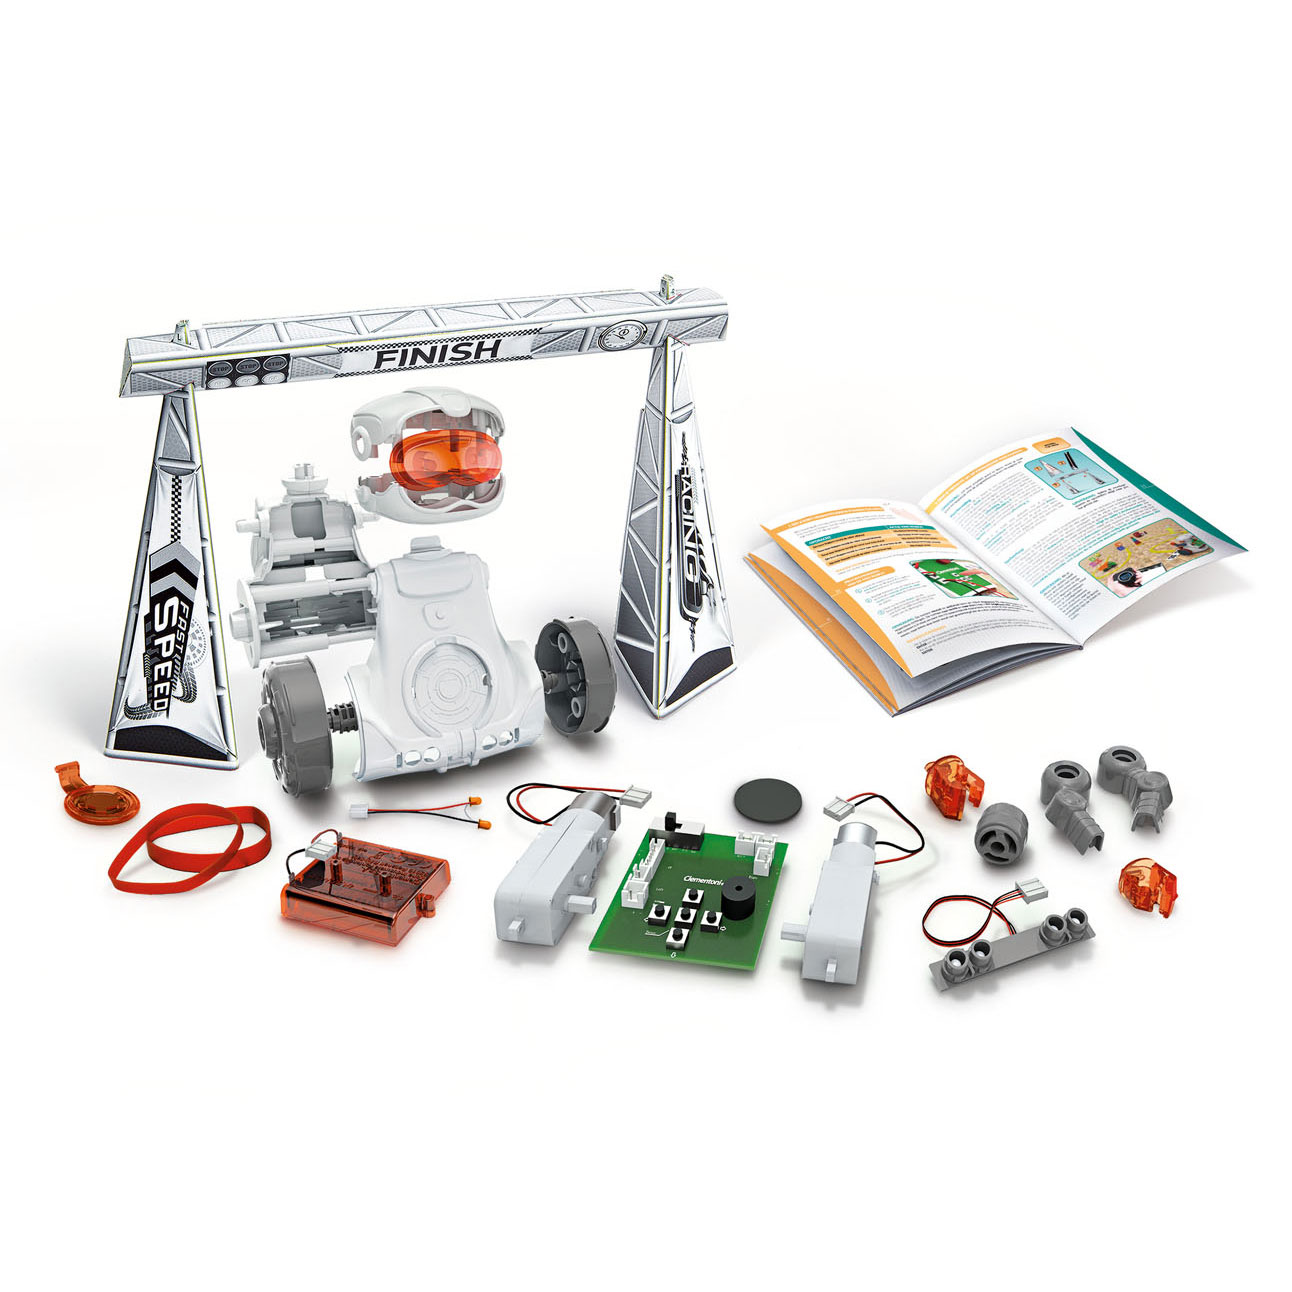 Clementoni Mio Roboter  Engineering-Kits, 8 Jahr , Kind, grau, orange, weiß, Italien, 300 mm S  Spielzeug und Wissenschaft für Kinder